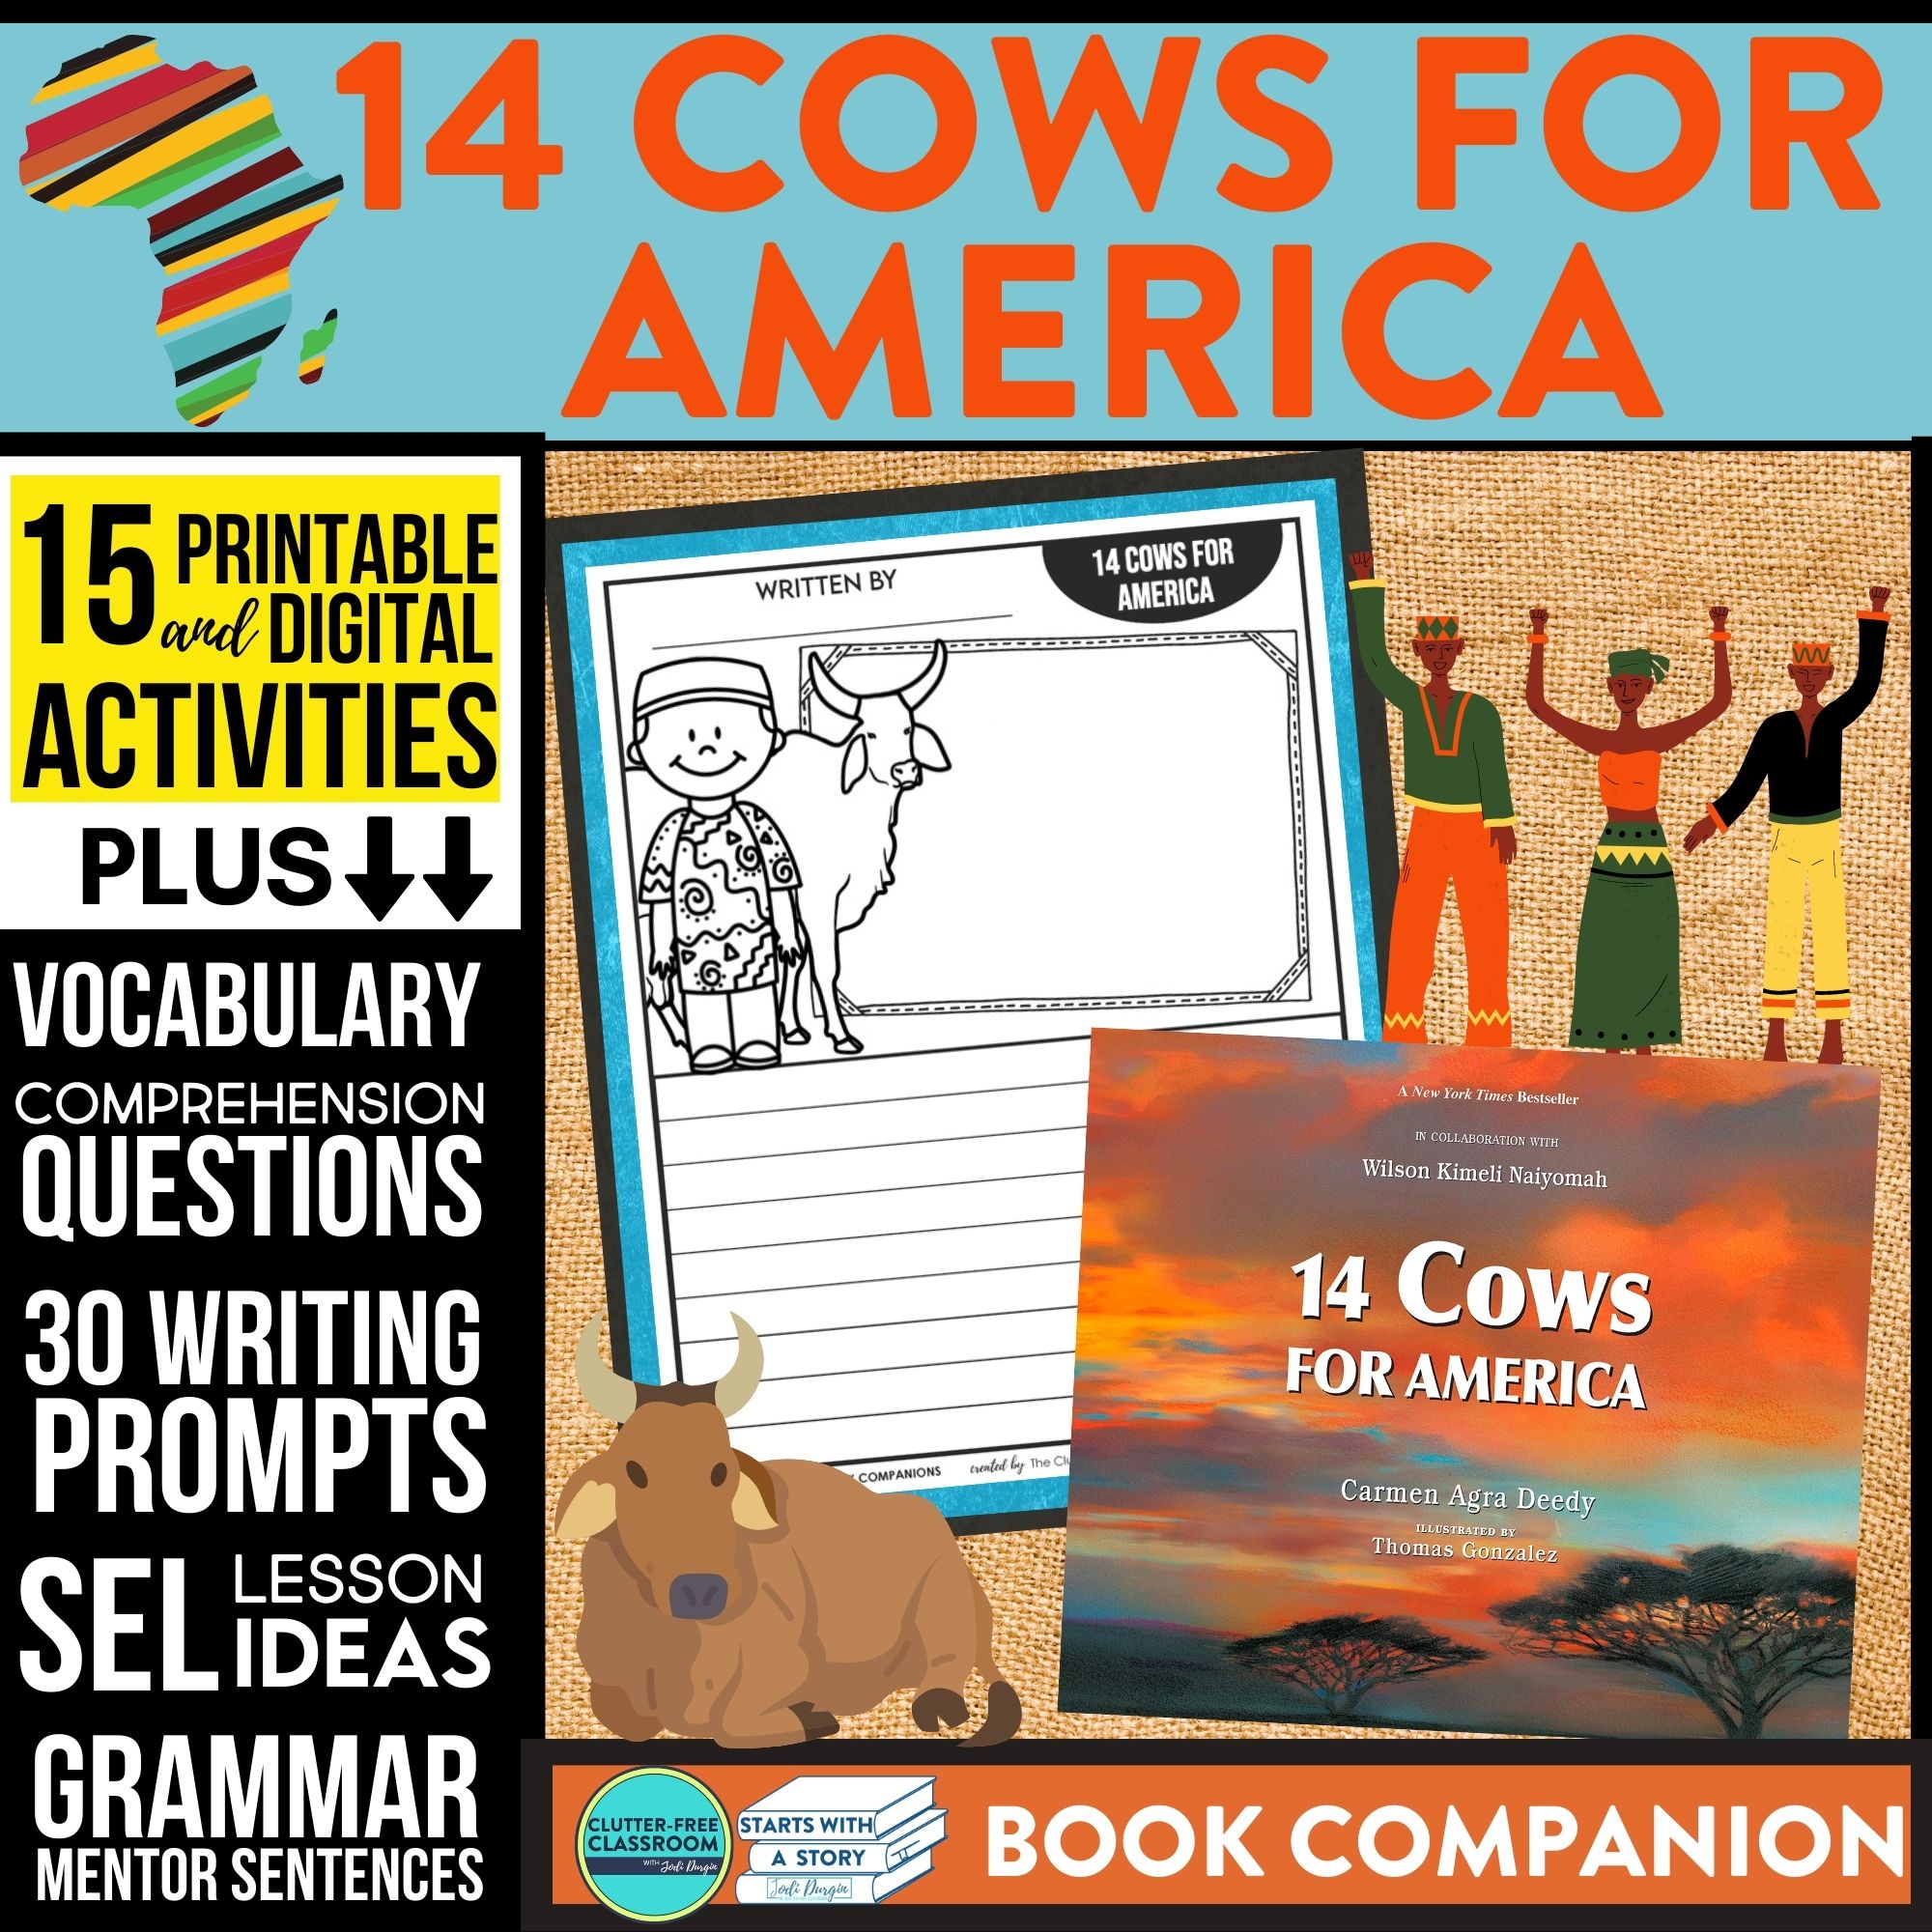 14 Cows for America book companion